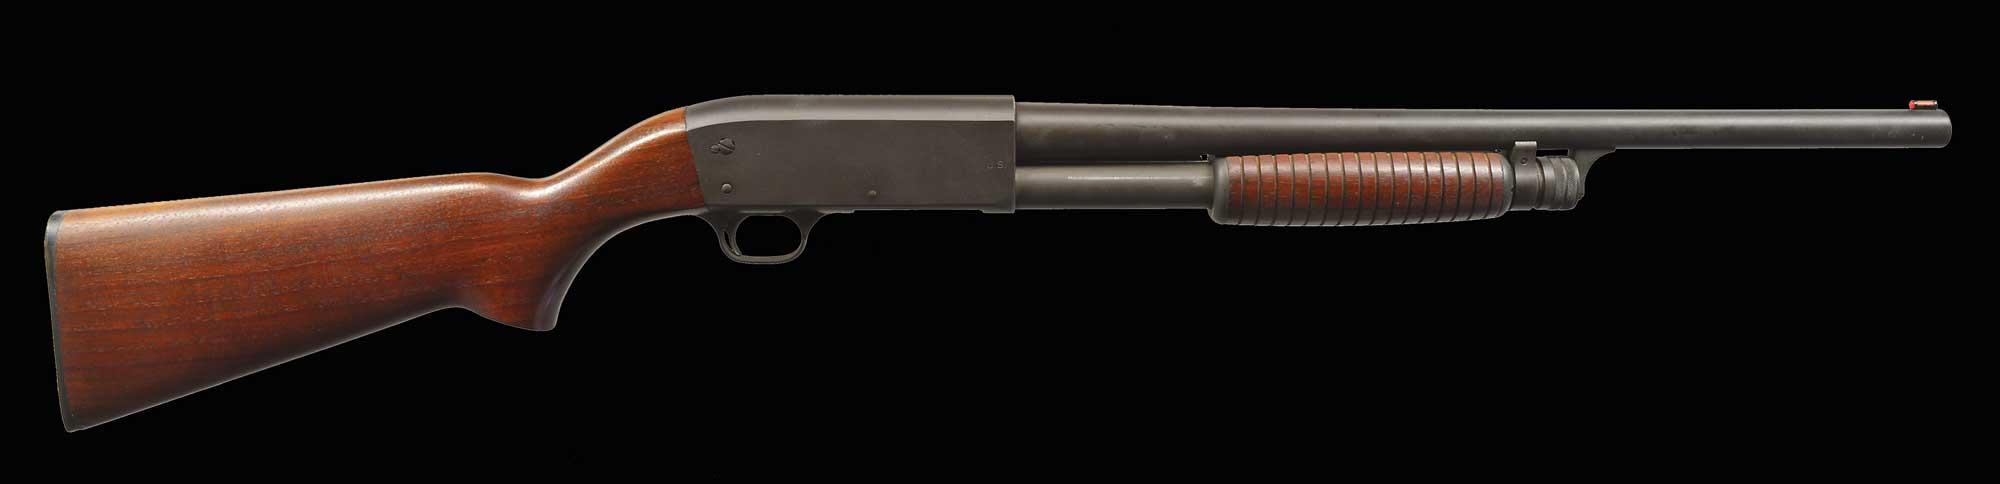 ithaca 37 shotgun 1970